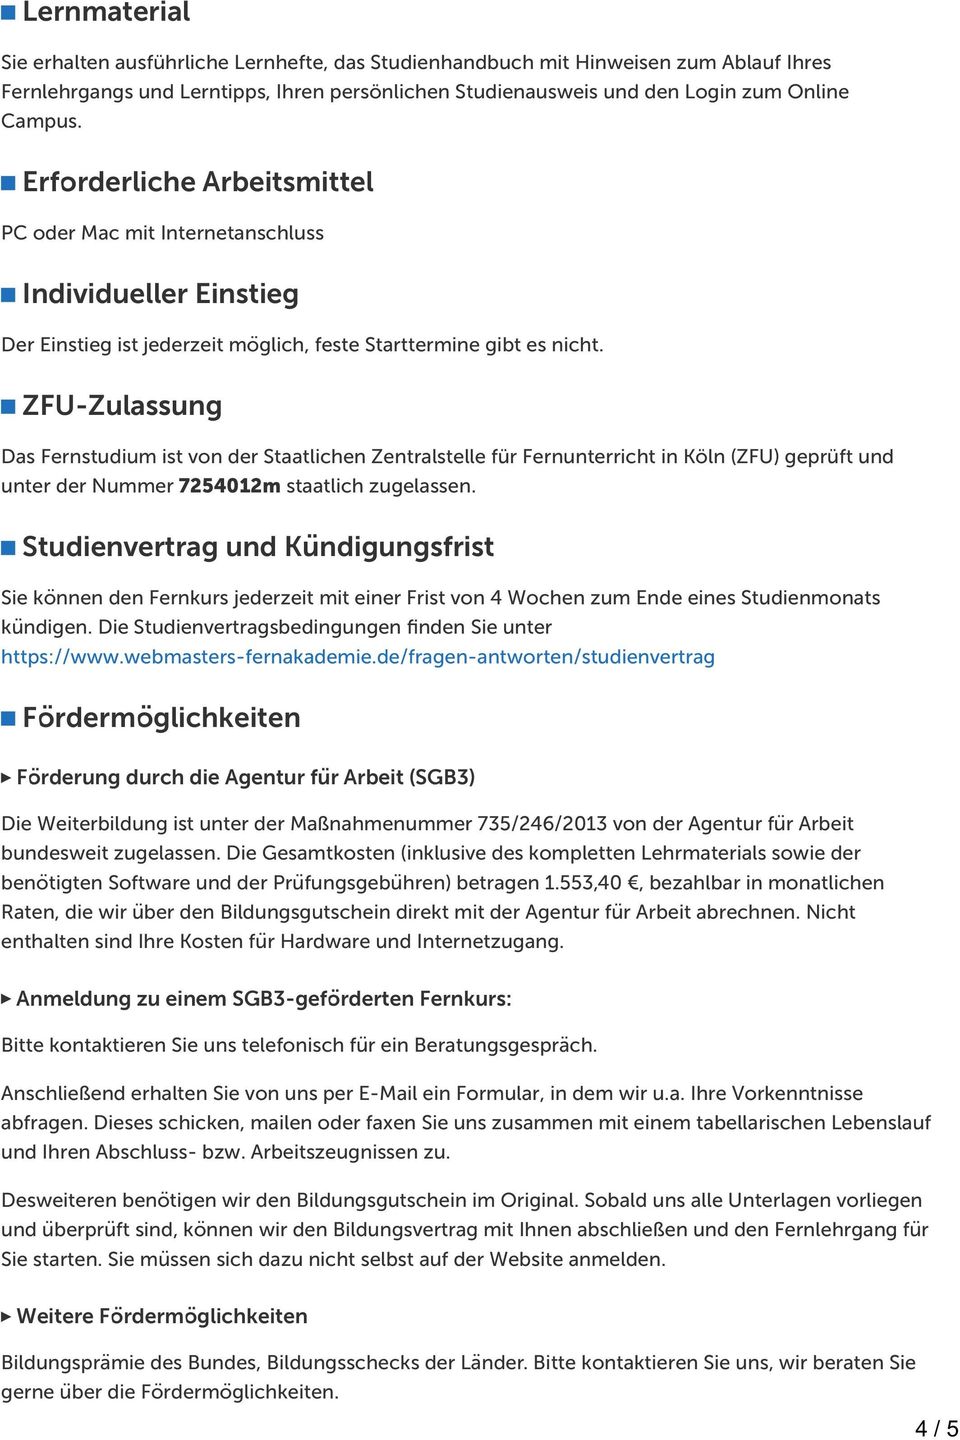 ZFU-Zulassung Das Fernstudium ist von der Staatlichen Zentralstelle für Fernunterricht in Köln (ZFU) geprüft und unter der Nummer 7254012m staatlich zugelassen.